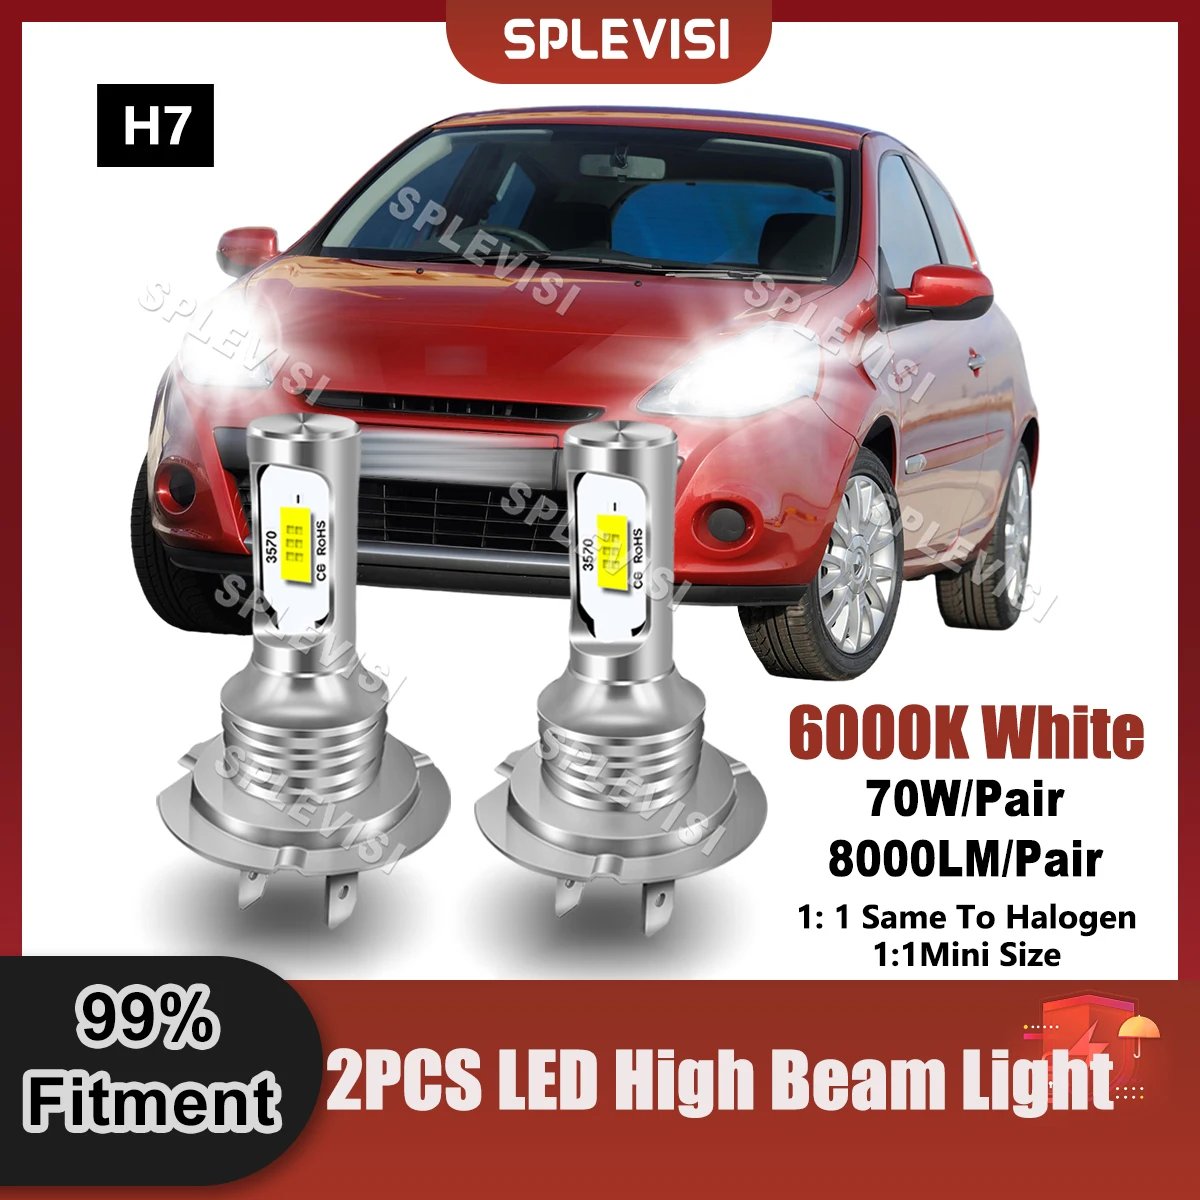 

Pure White LED Headlight H7 High Beam Bulbs 9V-24V 8000LM For Mercedes SL R230 2003 2004 2005 2006 2007 2008 2009 2010 2011 2012